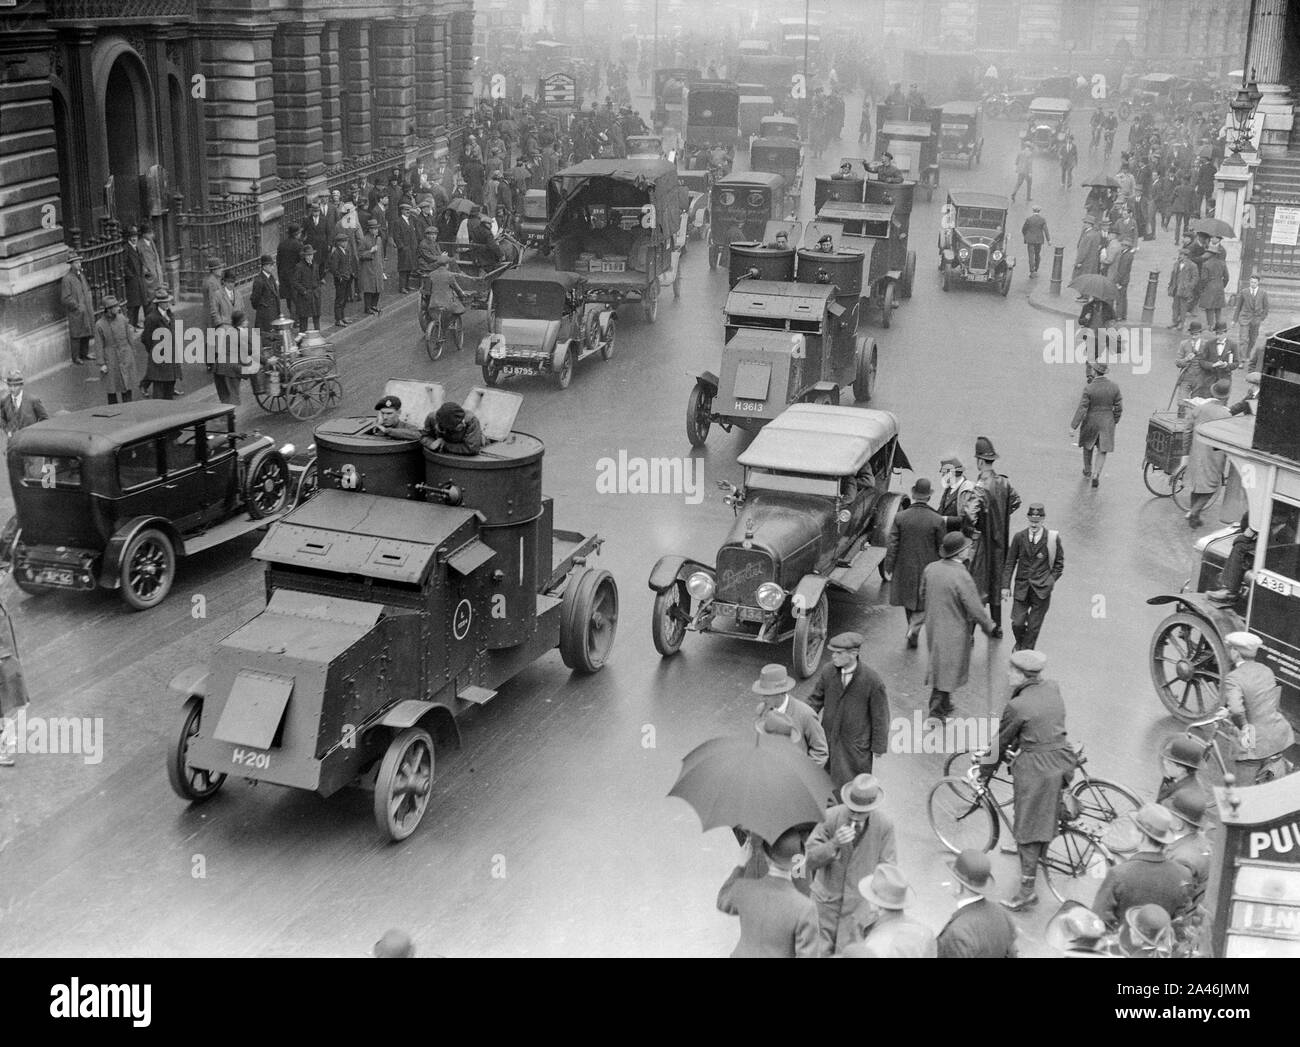 12 mai 1926. Londres, Angleterre. Des troupes dans des véhicules blindés dans les rues de Londres dans une tentative de garder le contrôle et maintenir les services de base, au cours de la grève générale au Royaume-Uni, qui a duré du 3 au 12 mai 1926. Banque D'Images